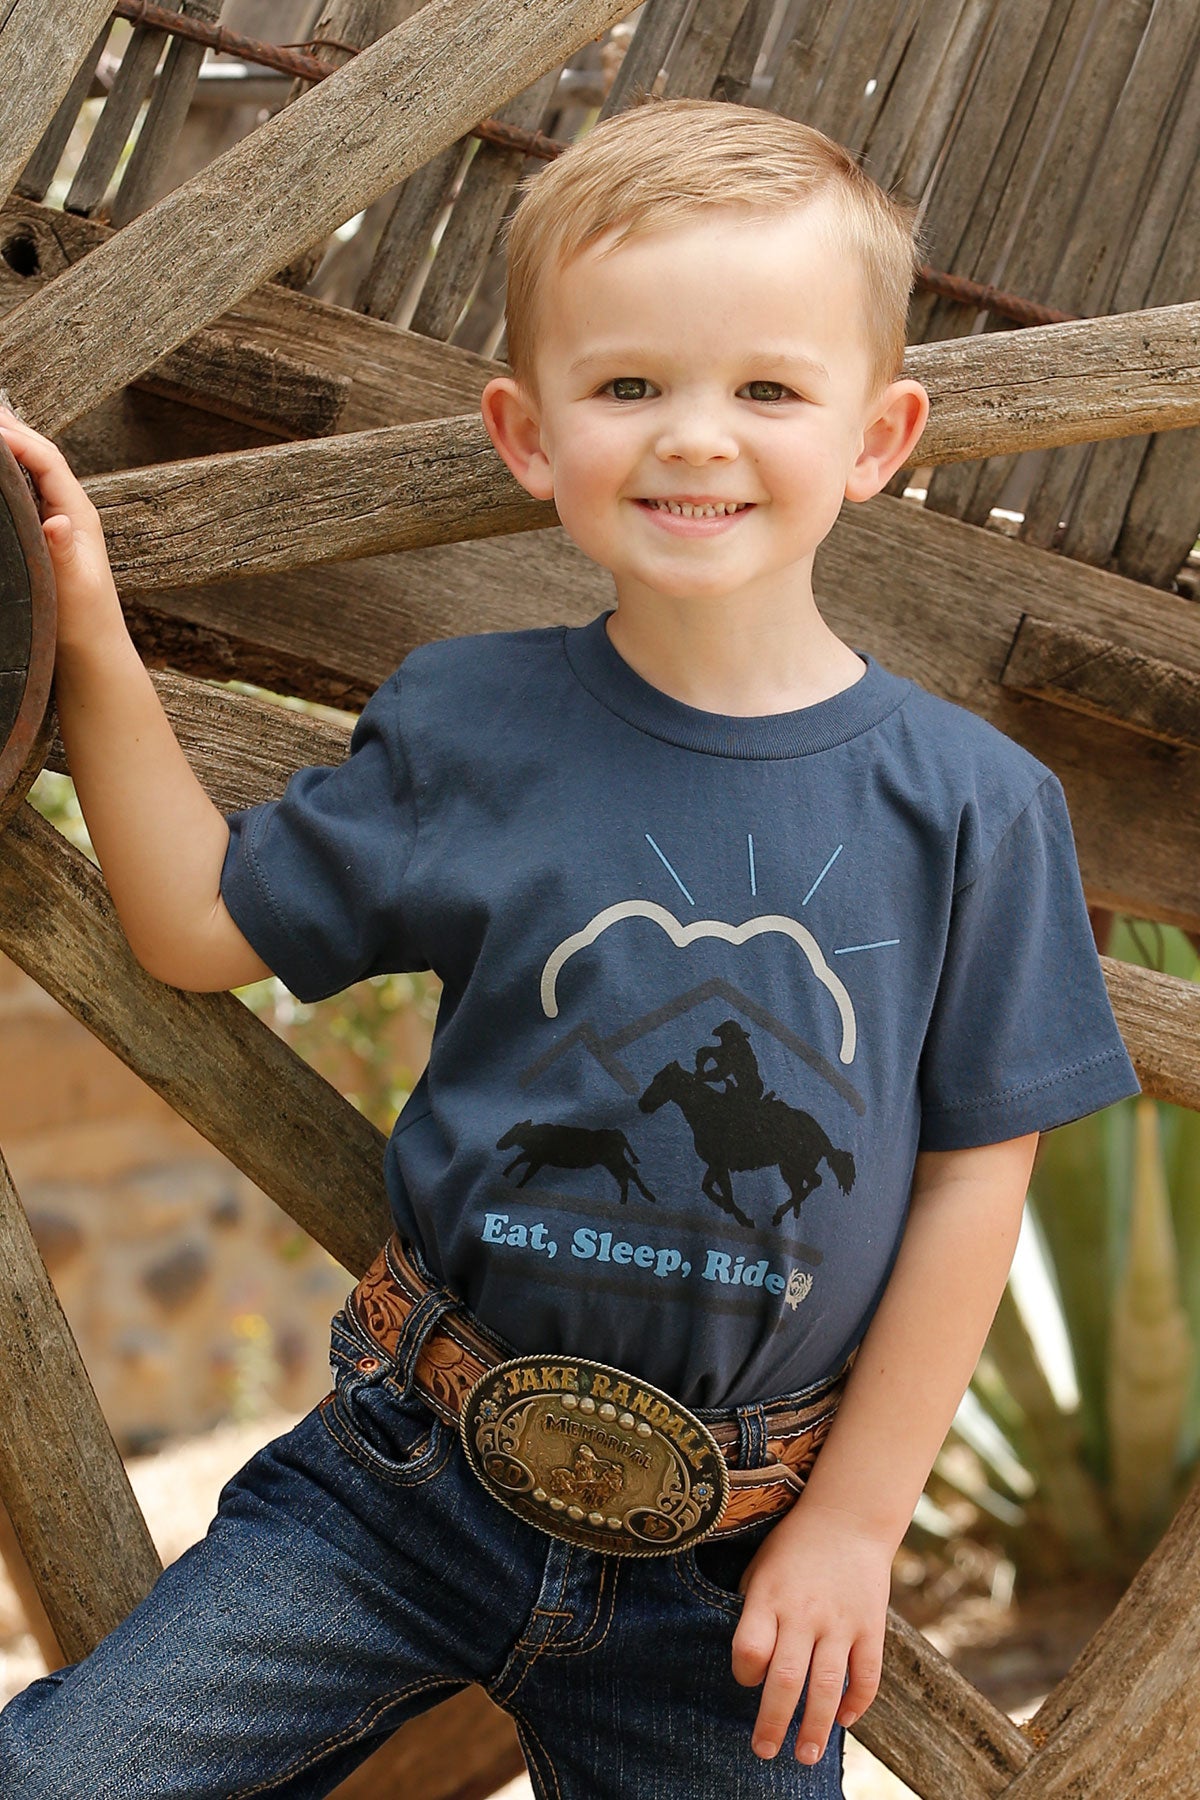 Wrangler Infant Girl's Shirt STYLE 112329263 - Bear Creek Western Store